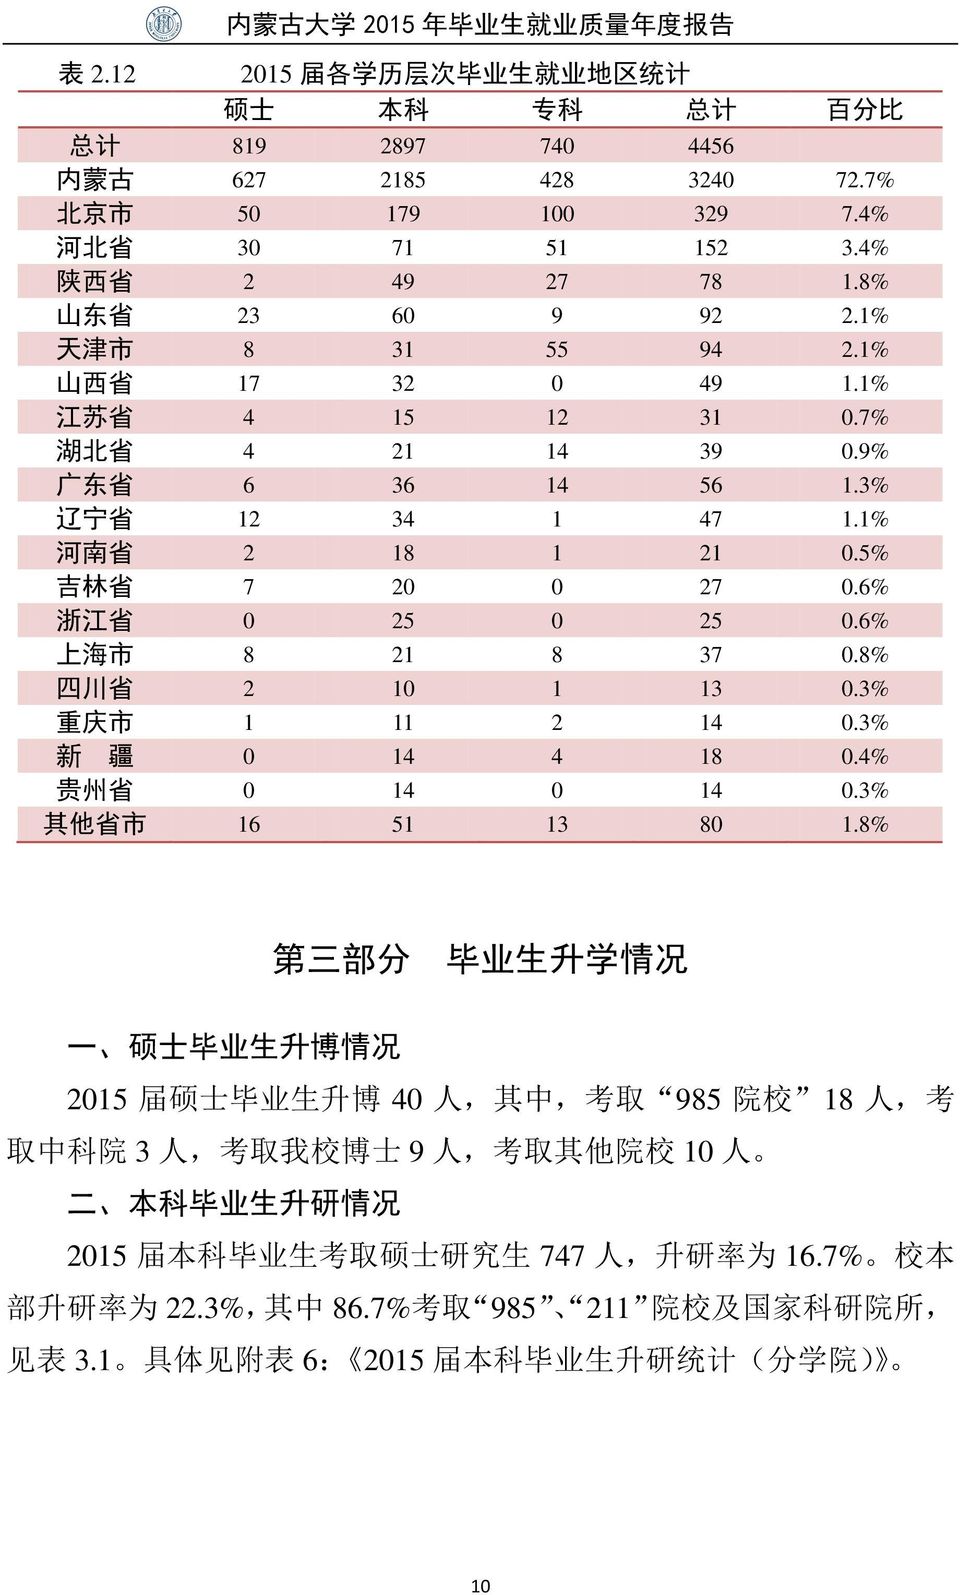 6% 浙 江 省 0 25 0 25 0.6% 上 海 市 8 21 8 37 0.8% 四 川 省 2 10 1 13 0.3% 重 庆 市 1 11 2 14 0.3% 新 疆 0 14 4 18 0.4% 贵 州 省 0 14 0 14 0.3% 其 他 省 市 16 51 13 80 1.